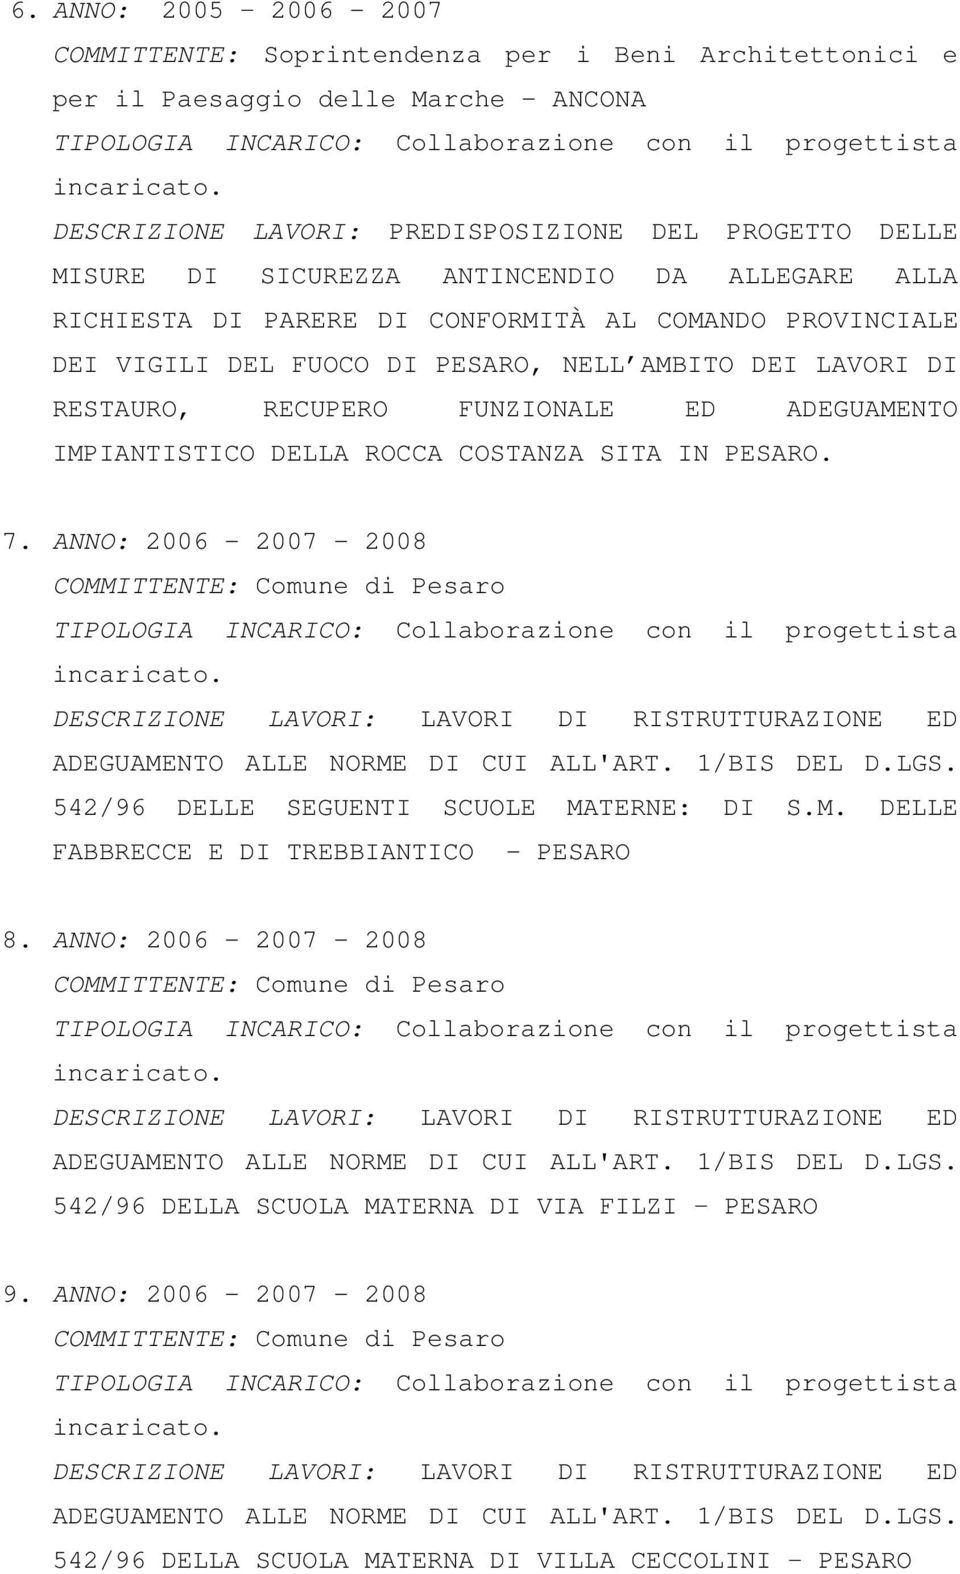 AMBITO DEI LAVORI DI RESTAURO, RECUPERO FUNZIONALE ED ADEGUAMENTO IMPIANTISTICO DELLA ROCCA COSTANZA SITA IN PESARO. 7. ANNO: 2006-2007 - 2008 COMMITTENTE: Comune di Pesaro incaricato.